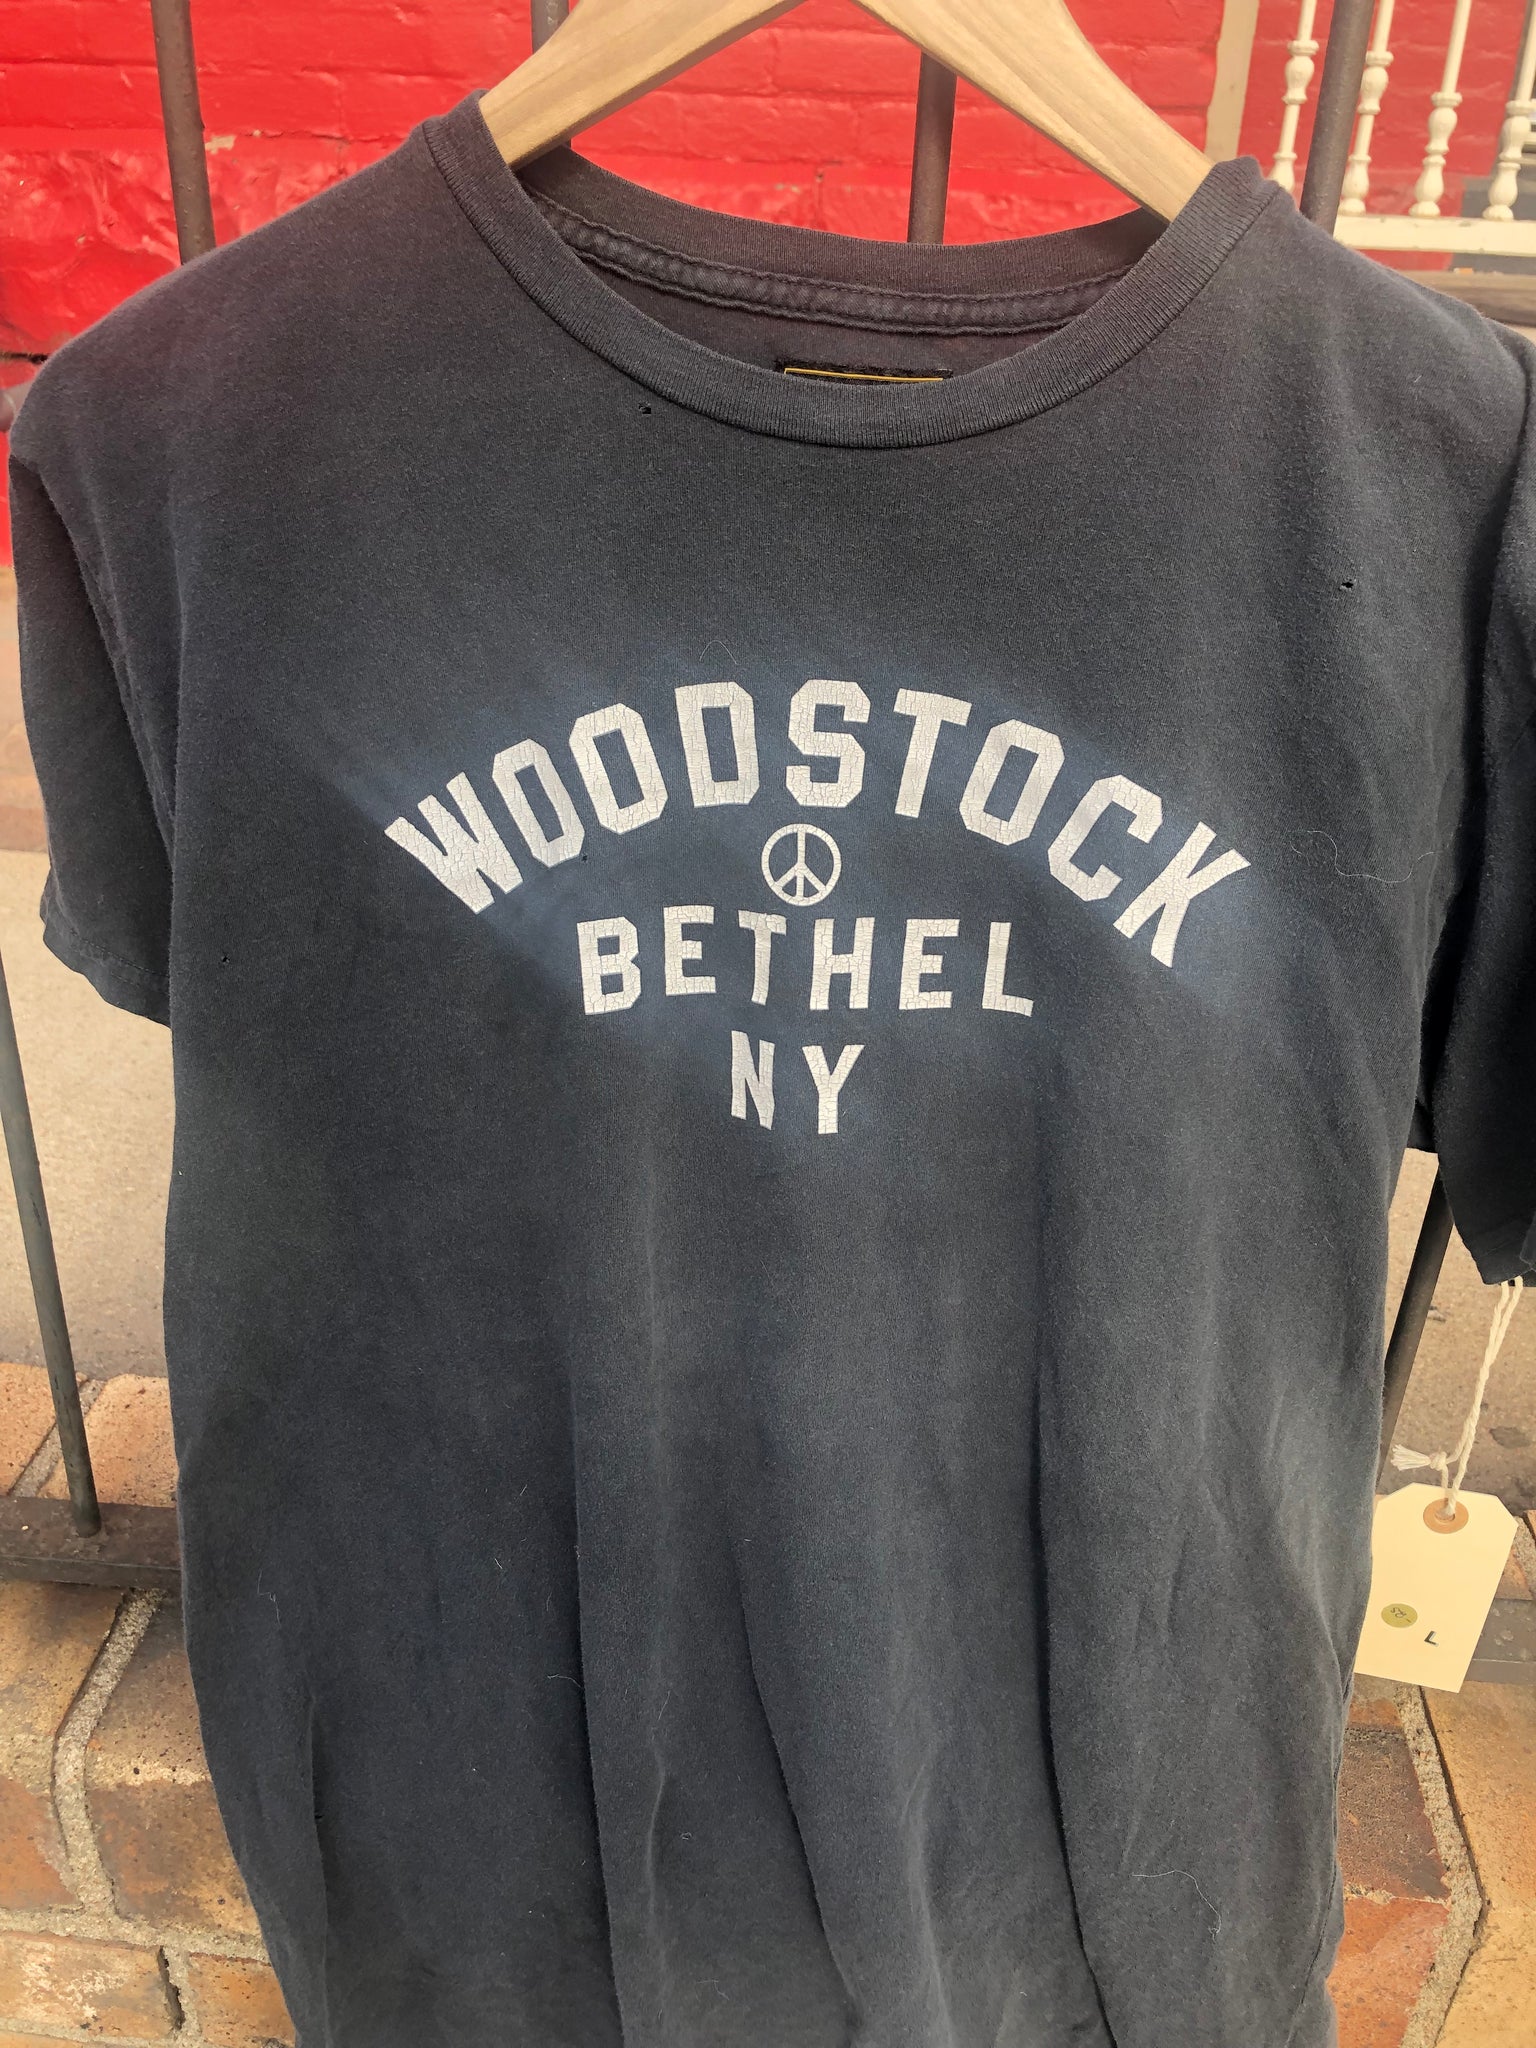 Retro Brand Woodstock Bethel NY concert t shirt